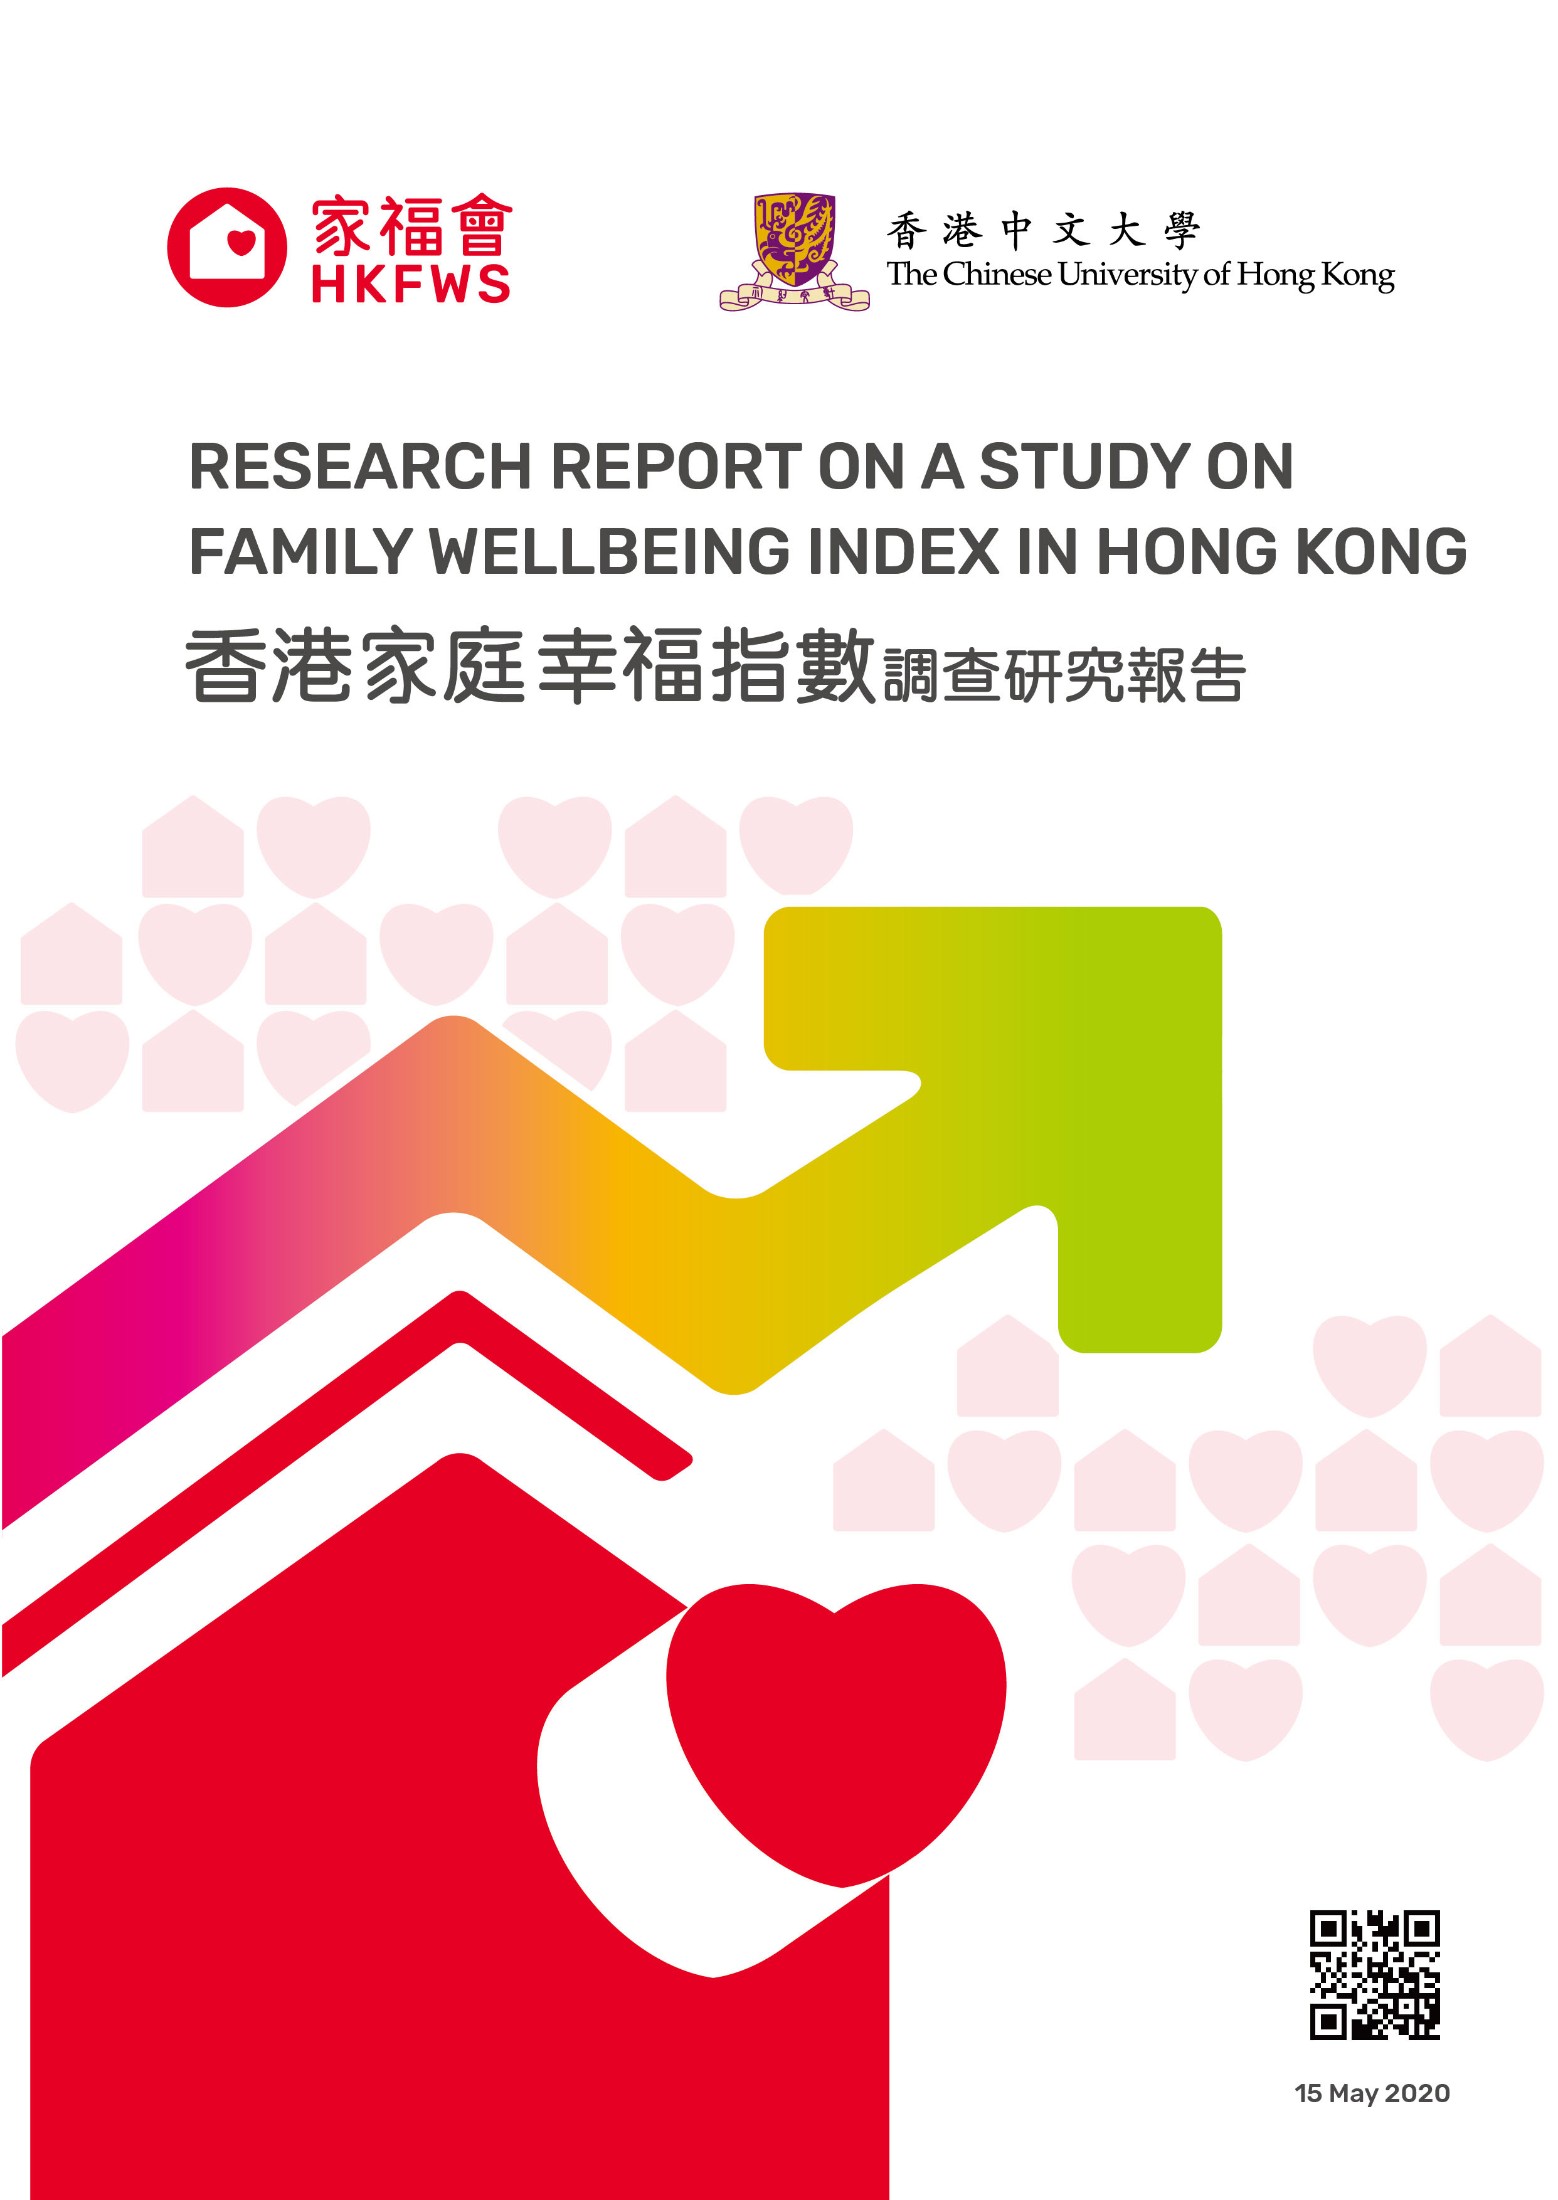 家福會發佈「香港家庭幸福指數調查研究報告」